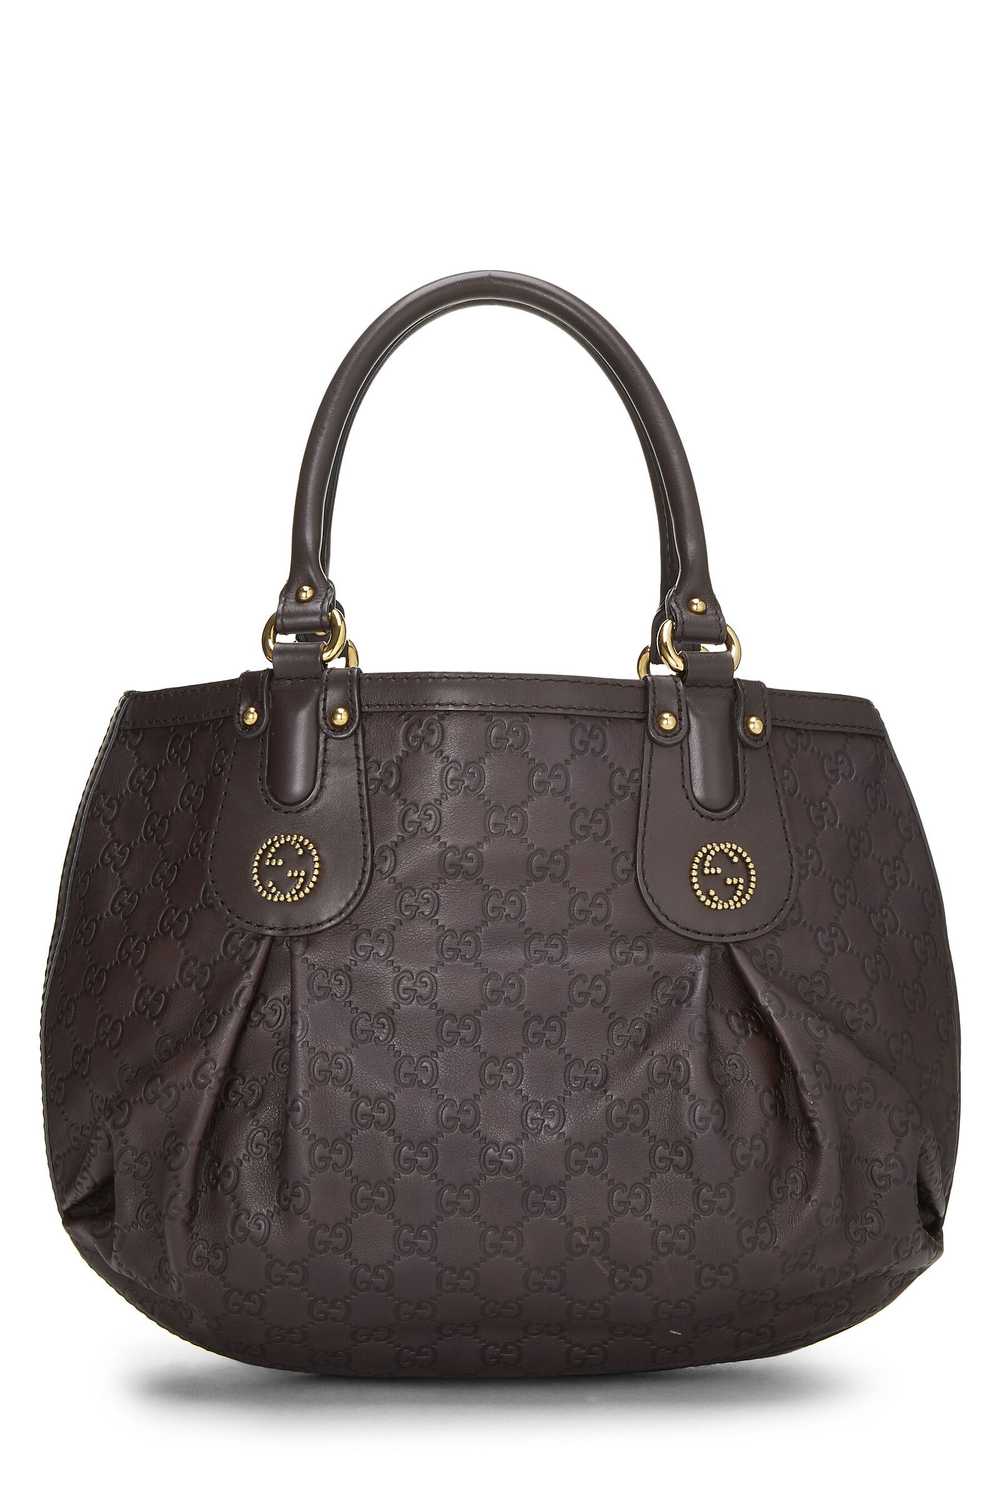 Brown Guccissima Beaded Studded Handbag - image 4